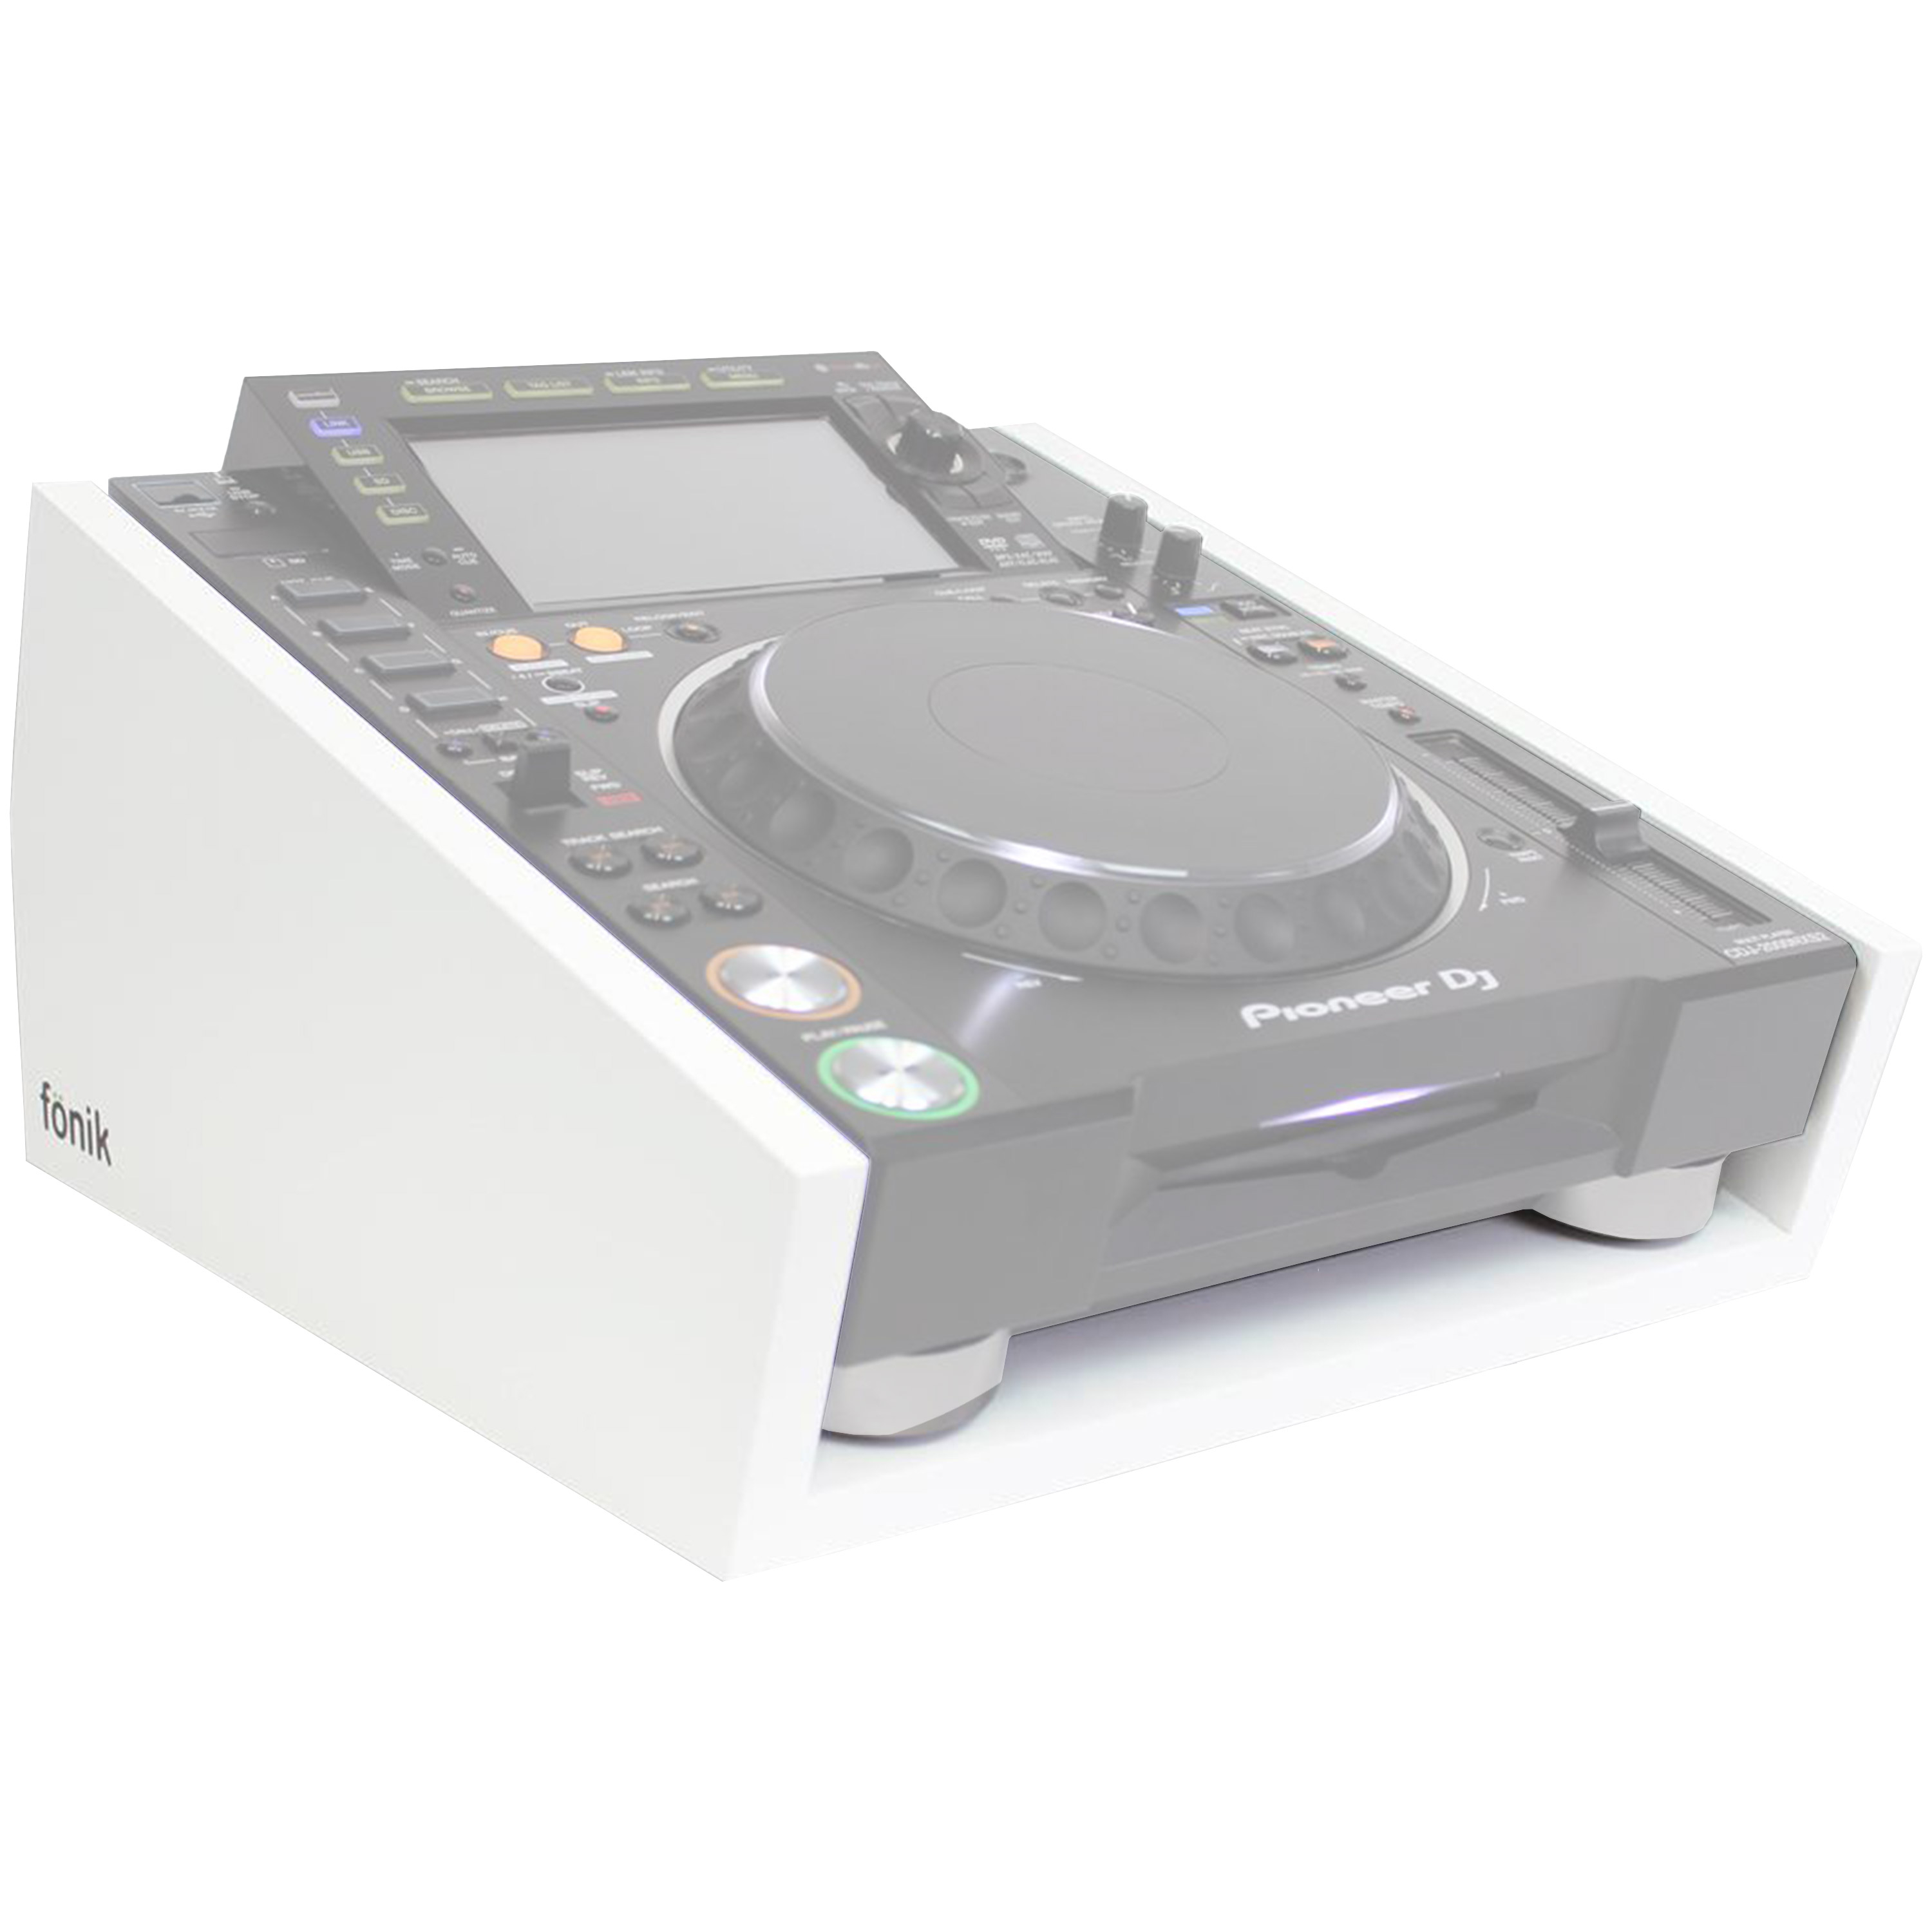 FONIK Audio Stand blanc pour CDJ-2000NXS2 (vendu séparément)